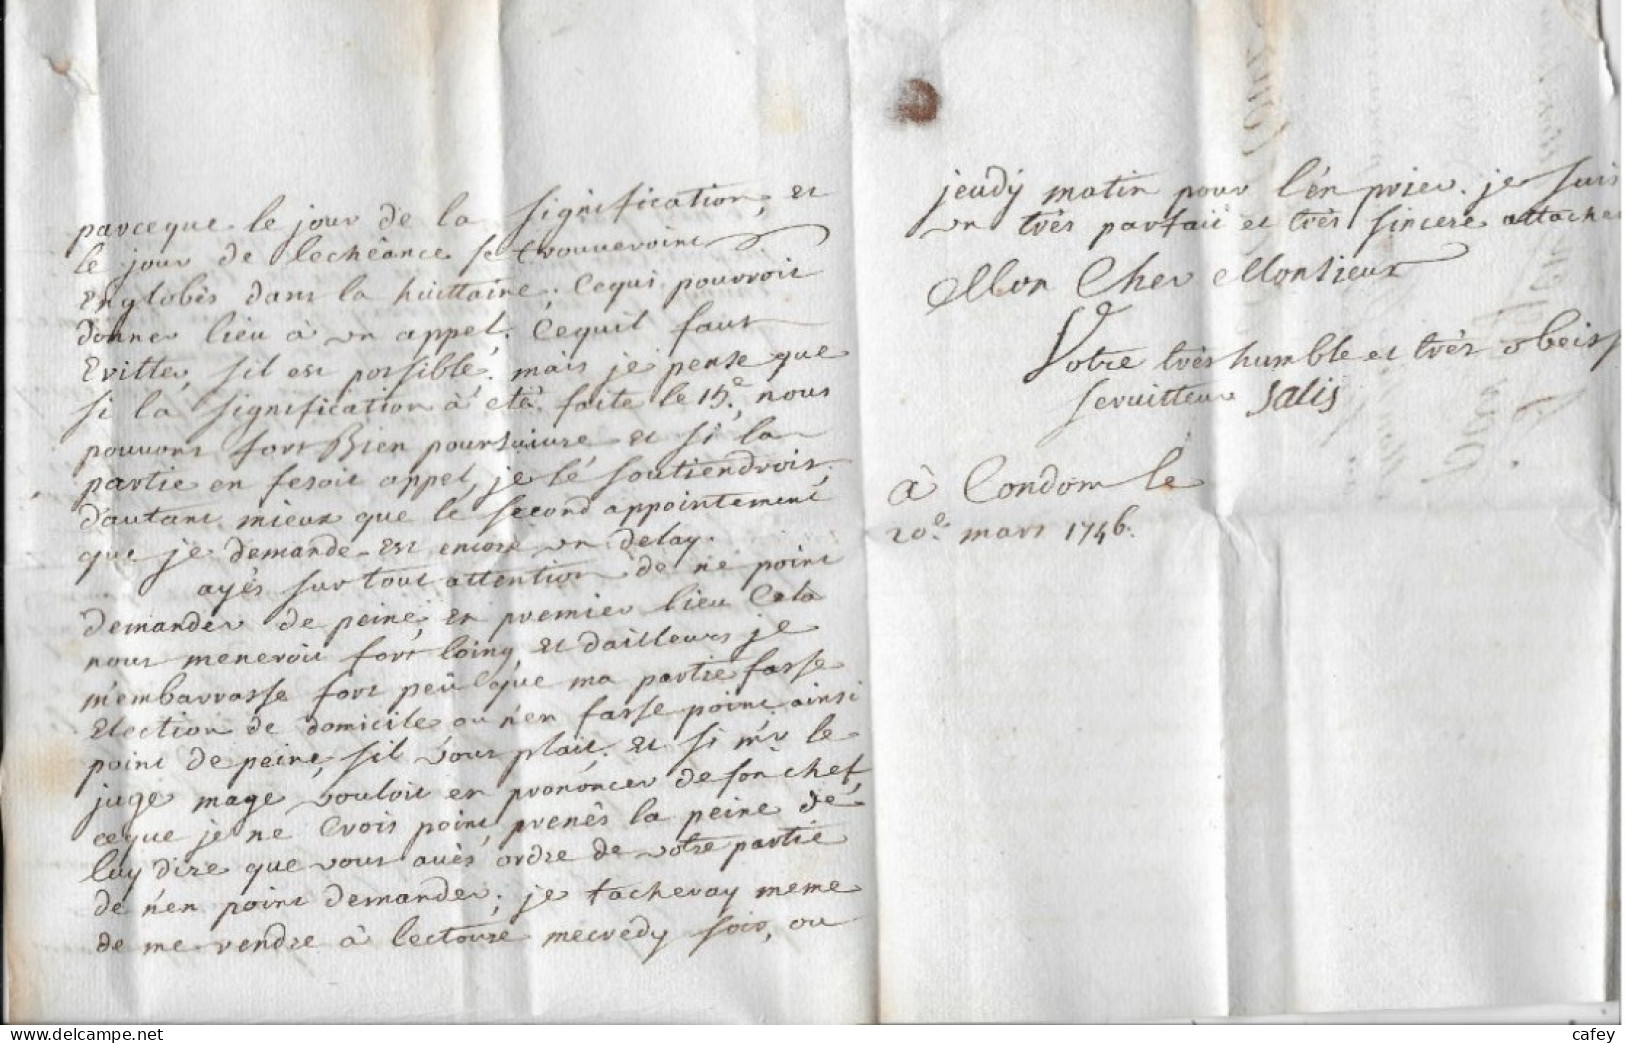 GERS   Lettre Marque  Postale CONDOM  1746 - 1701-1800: Precursori XVIII